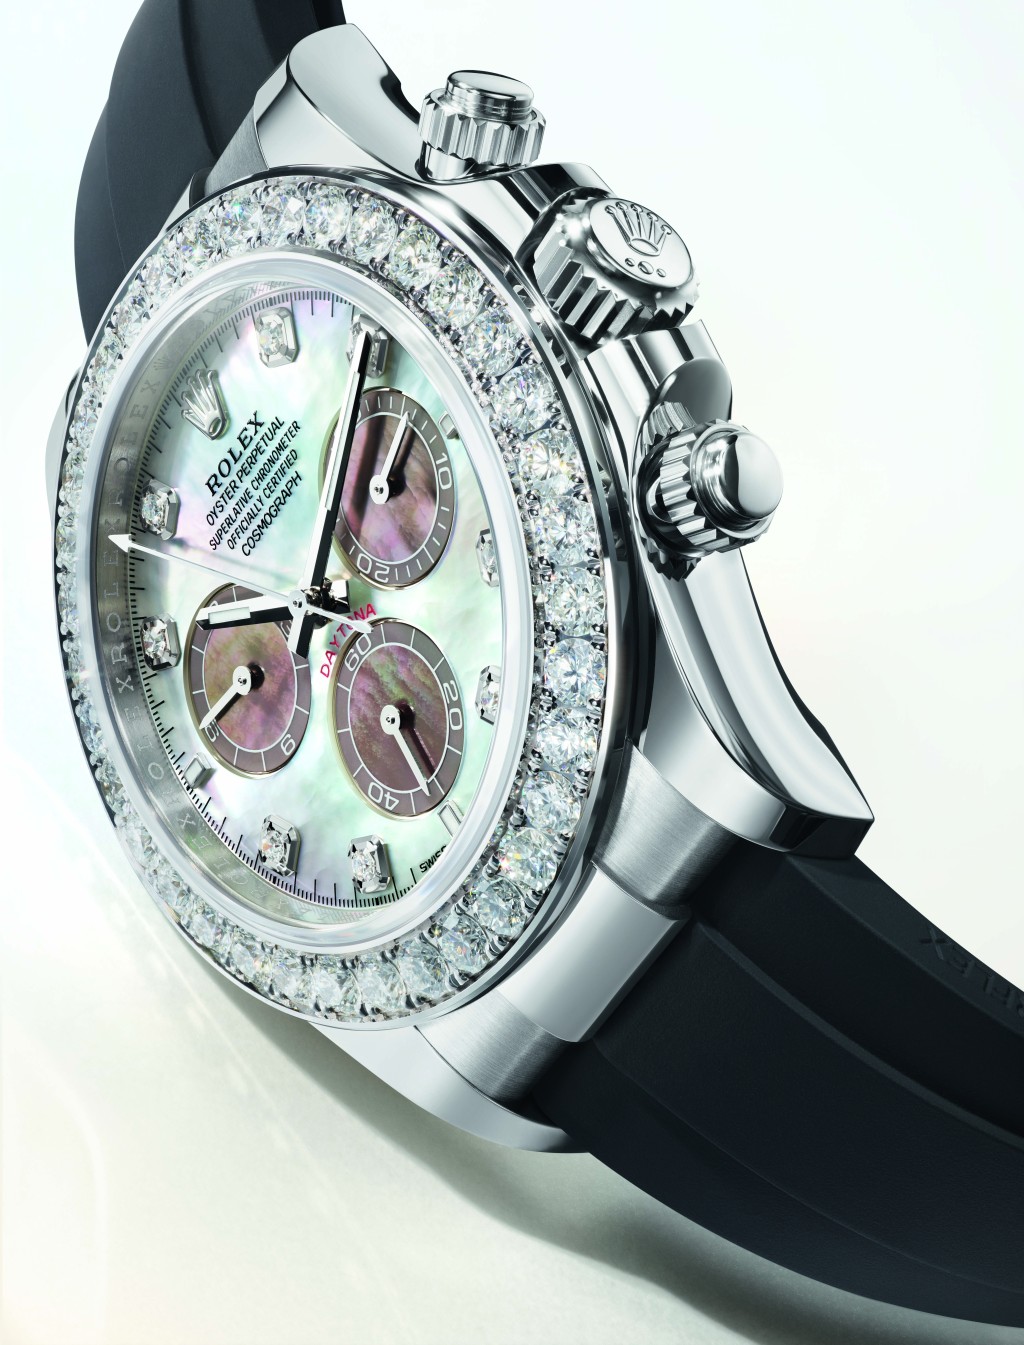 以白色貝母錶盤配襯三個黑色貝母計時小盤構成另類黑白熊貓面，搭配鑽石時刻之外，錶圈亦鑲有36顆鑽石。